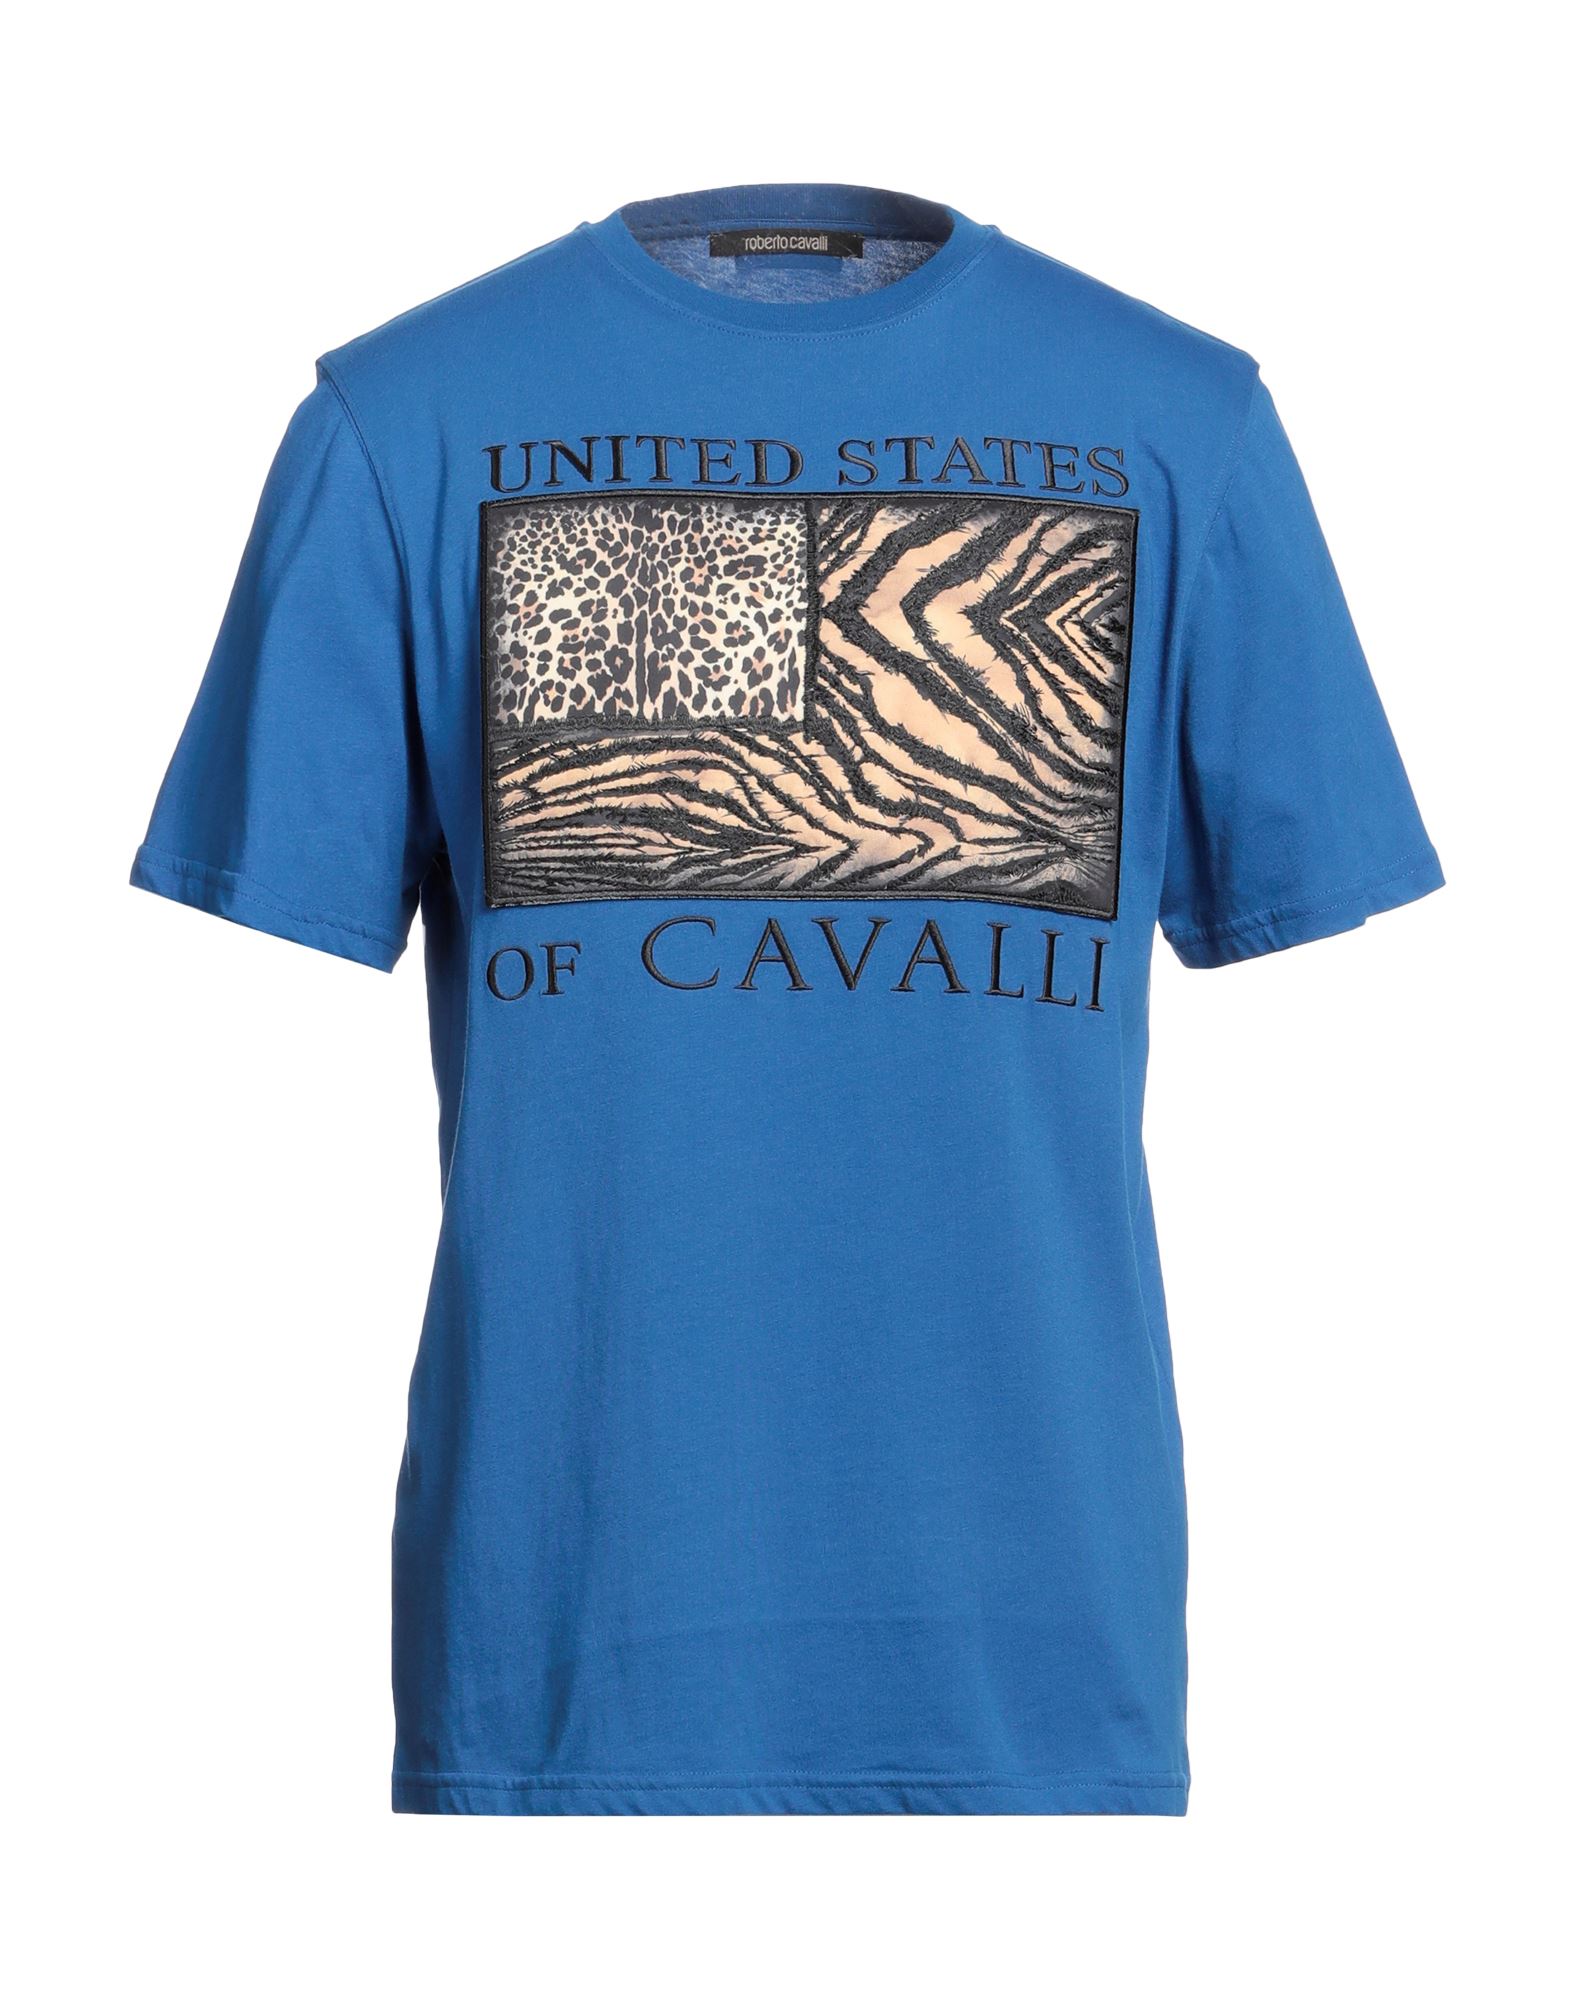 ロベルト・カバリ(Roberto Cavalli) メンズTシャツ・カットソー | 通販 ...